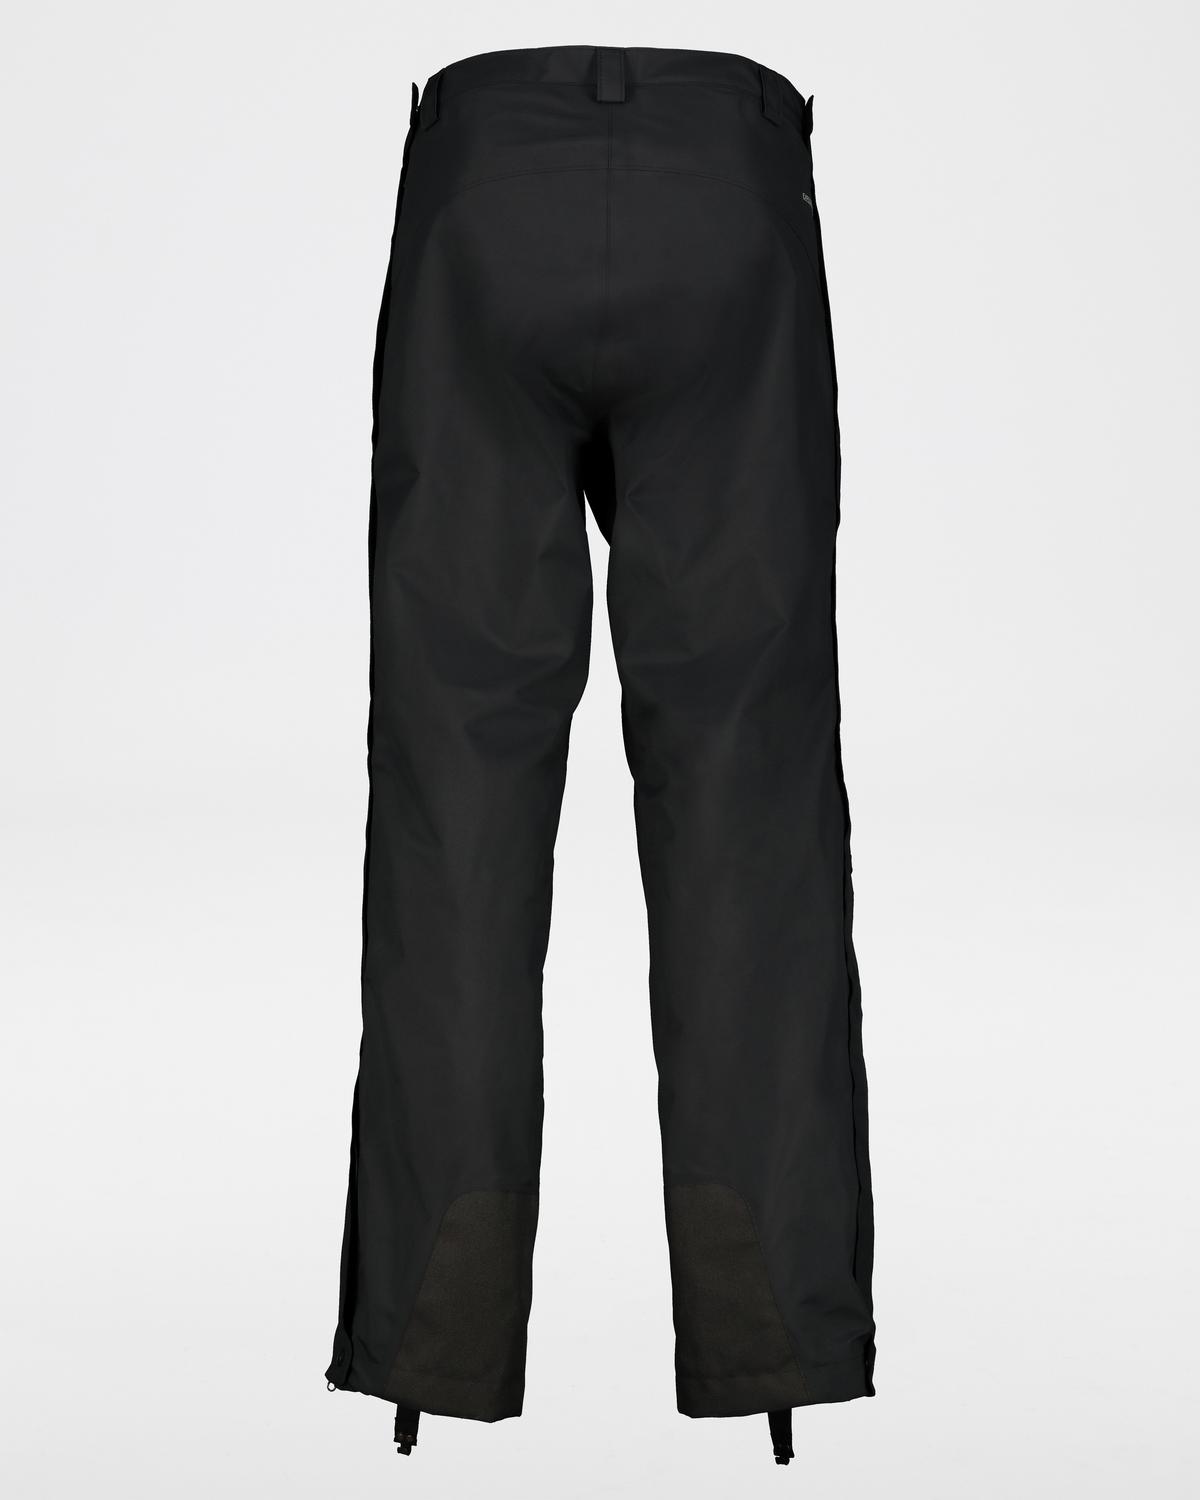 K-Way Men's Tempo Shell Pants -  black